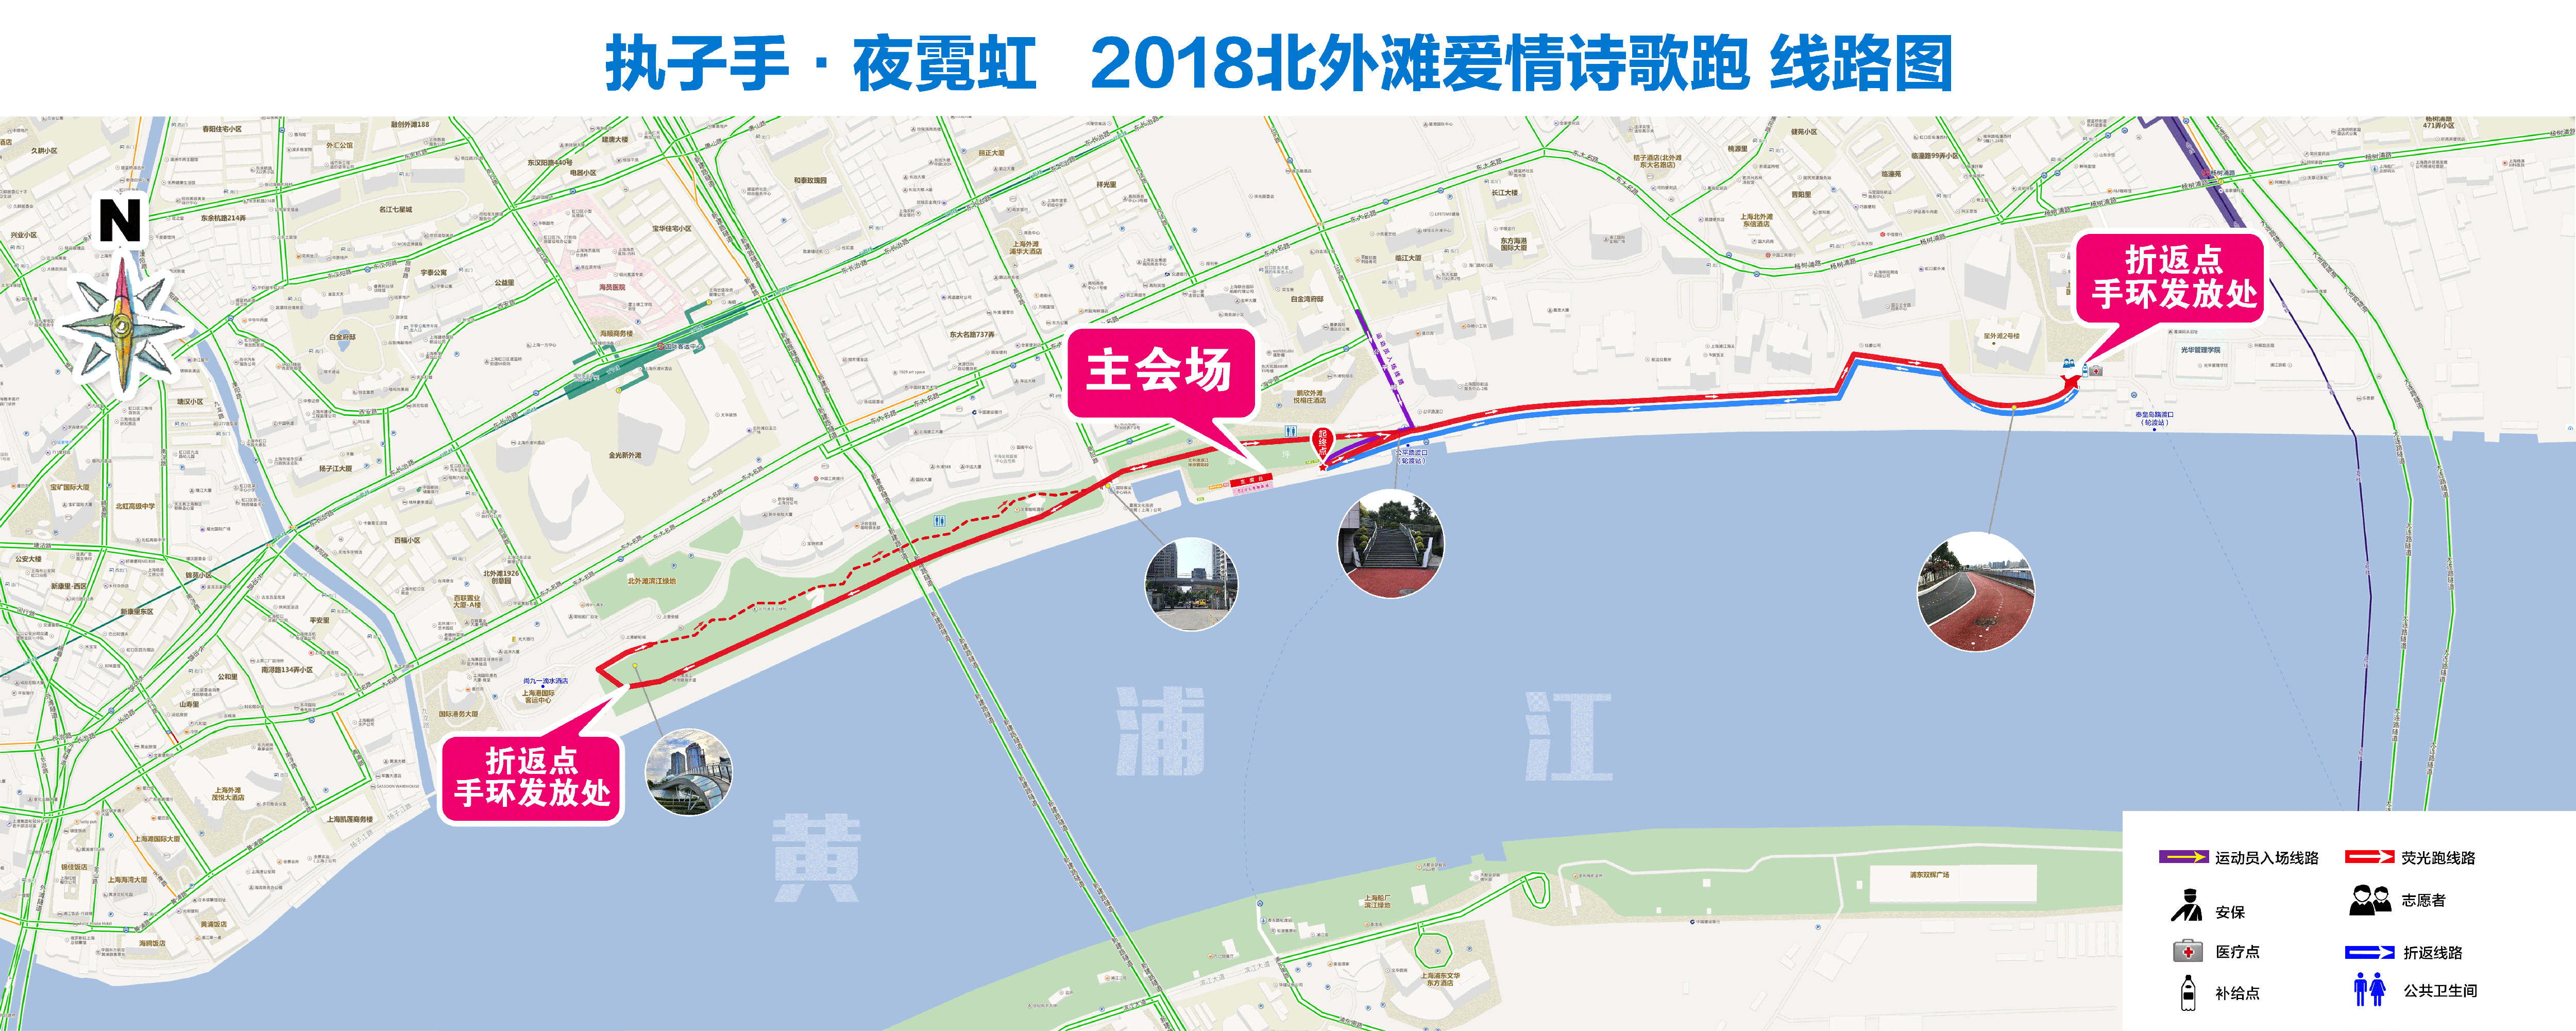 30签到入场) 活动路线: 起终点:北外滩滨江绿地置阳段   活动 路线图